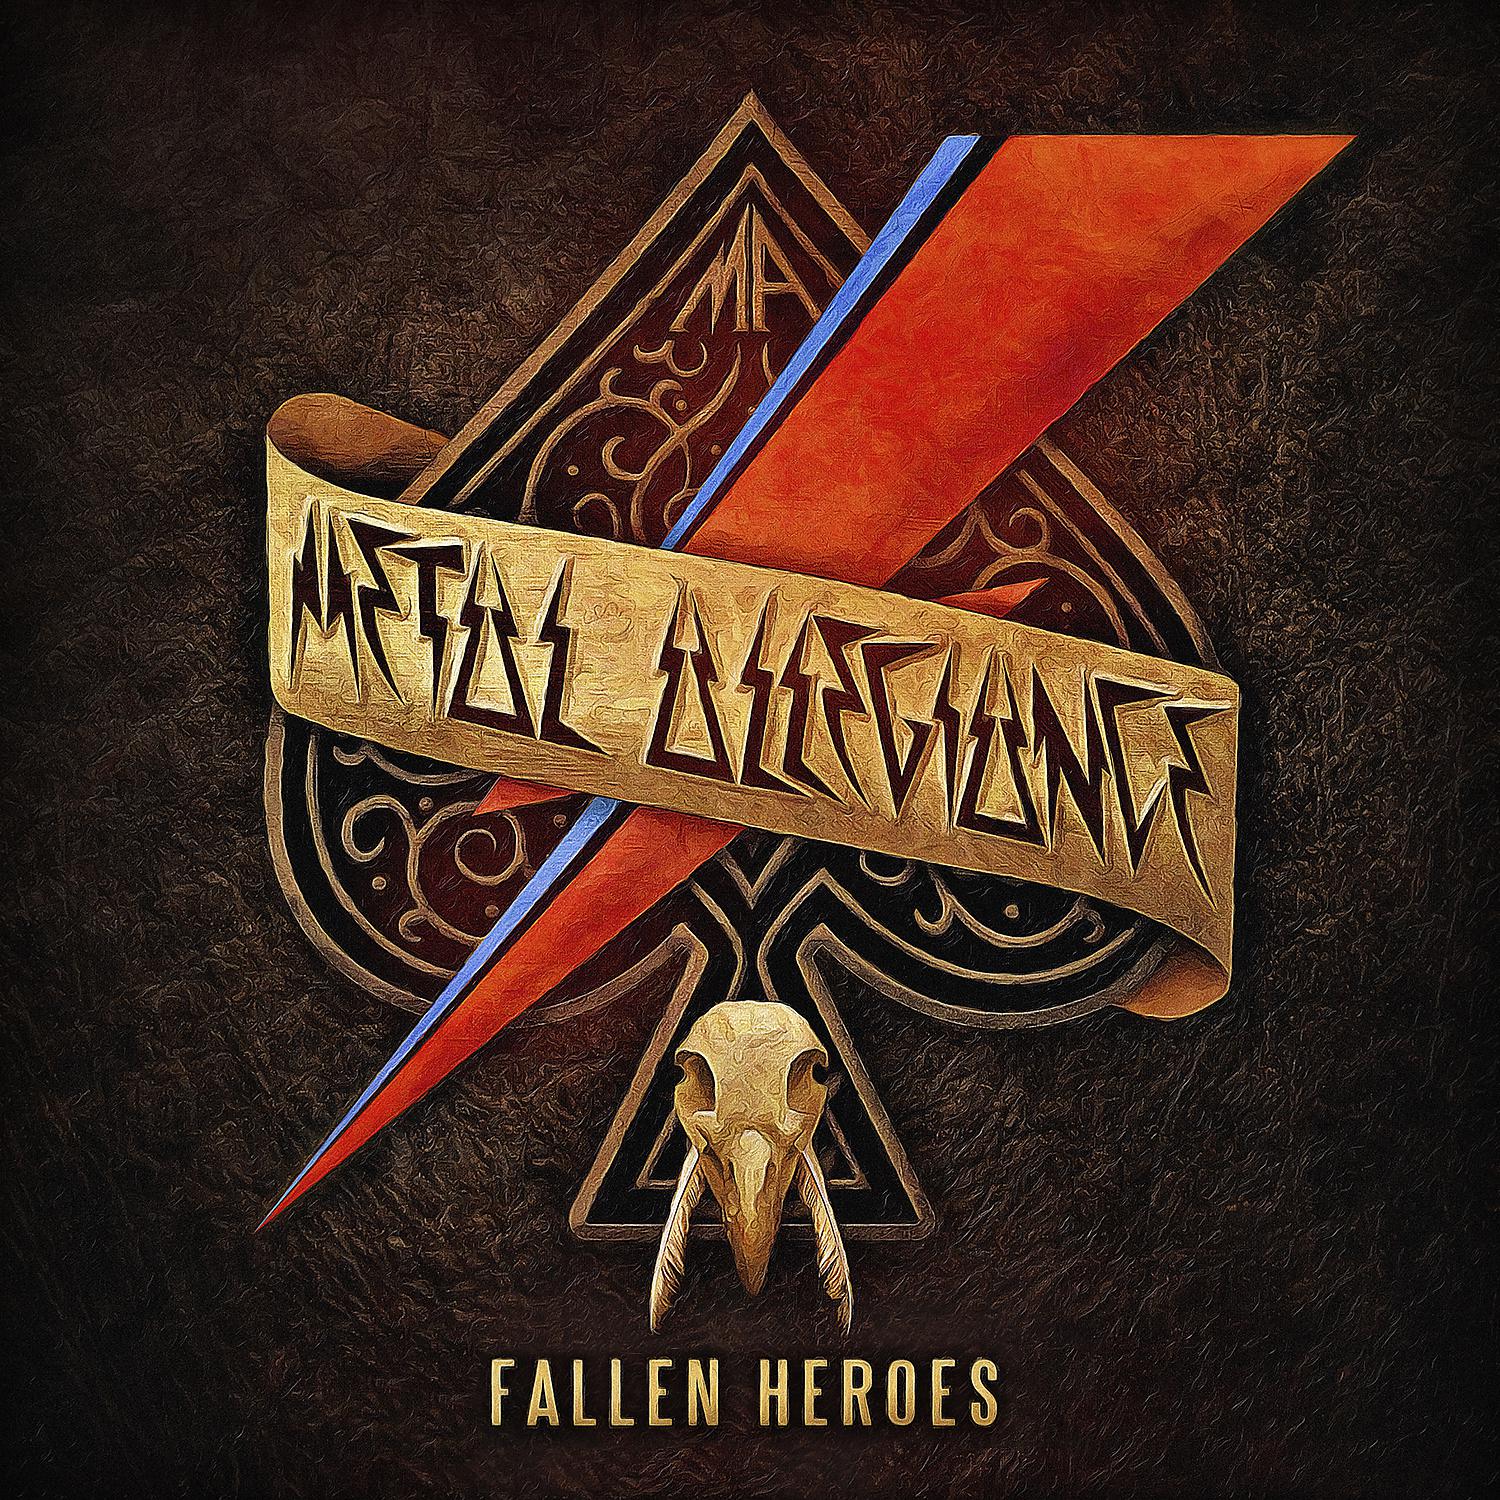 Fall hero. Metal Allegiance Band. Metal Allegiance we Rock исполнители. Fallen Hero. Metal Heroes.